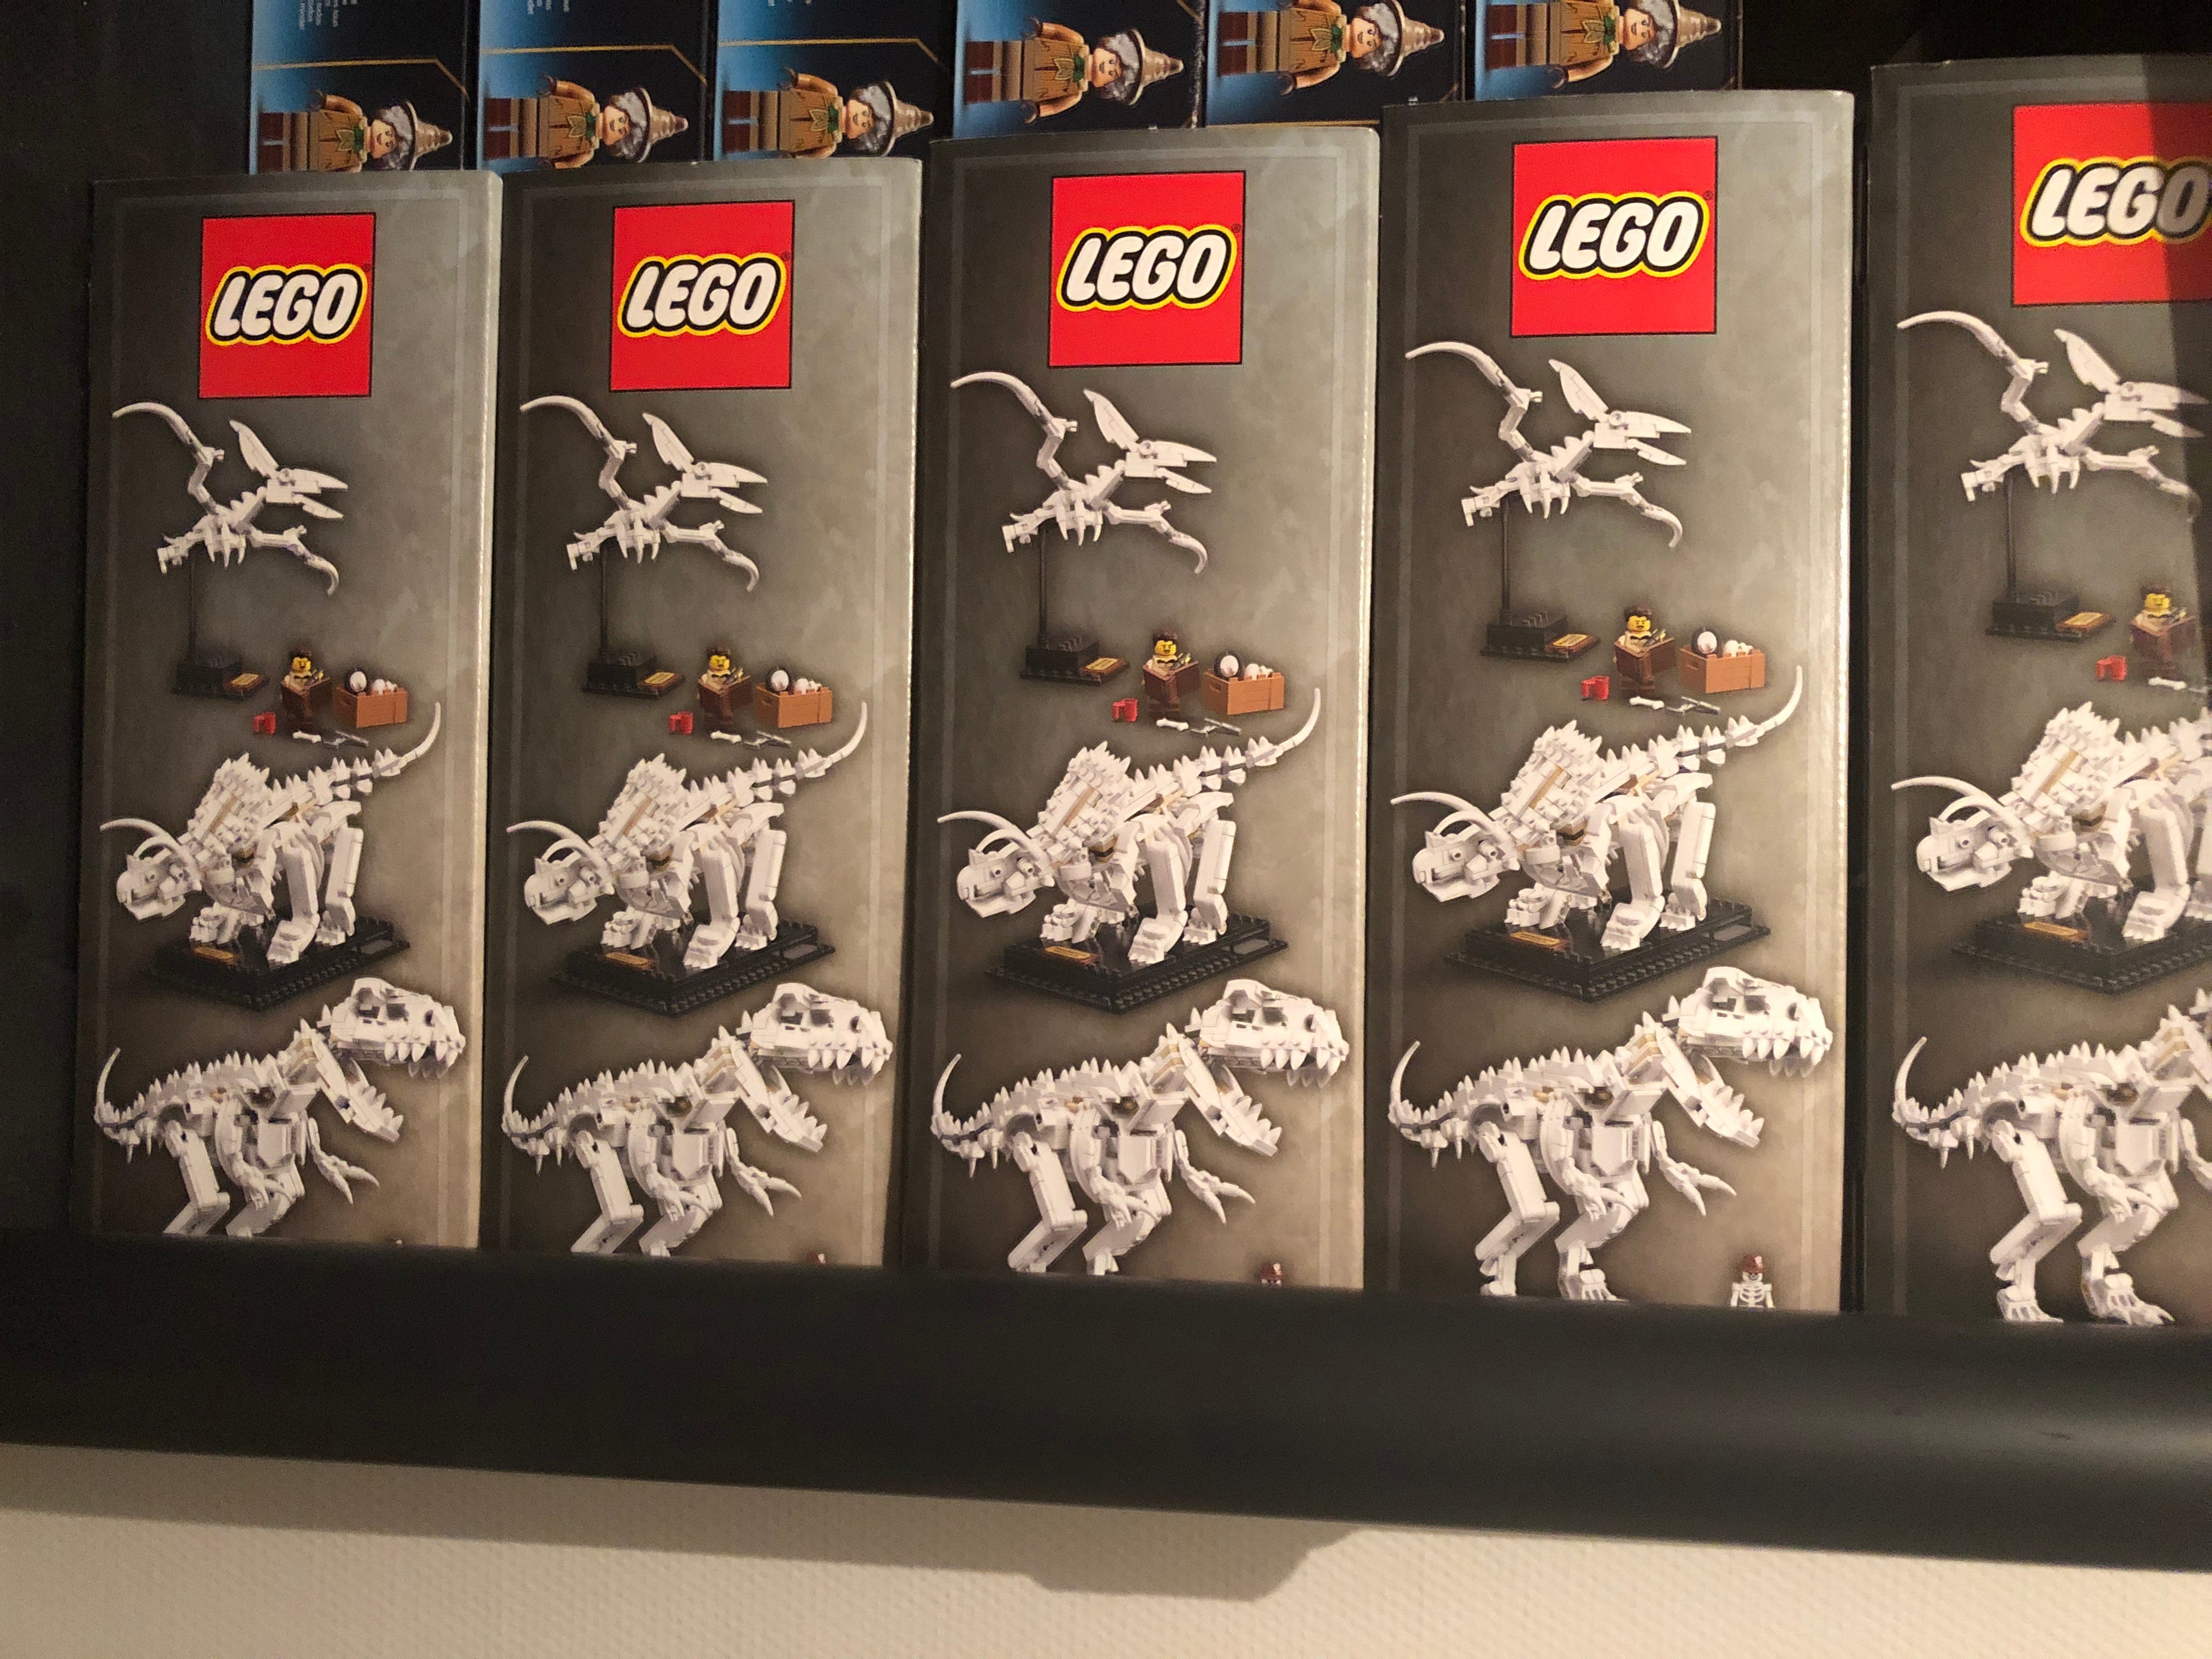 Collection complète LEGO Cuusoo & Ideas : tous les sets de 2011 à